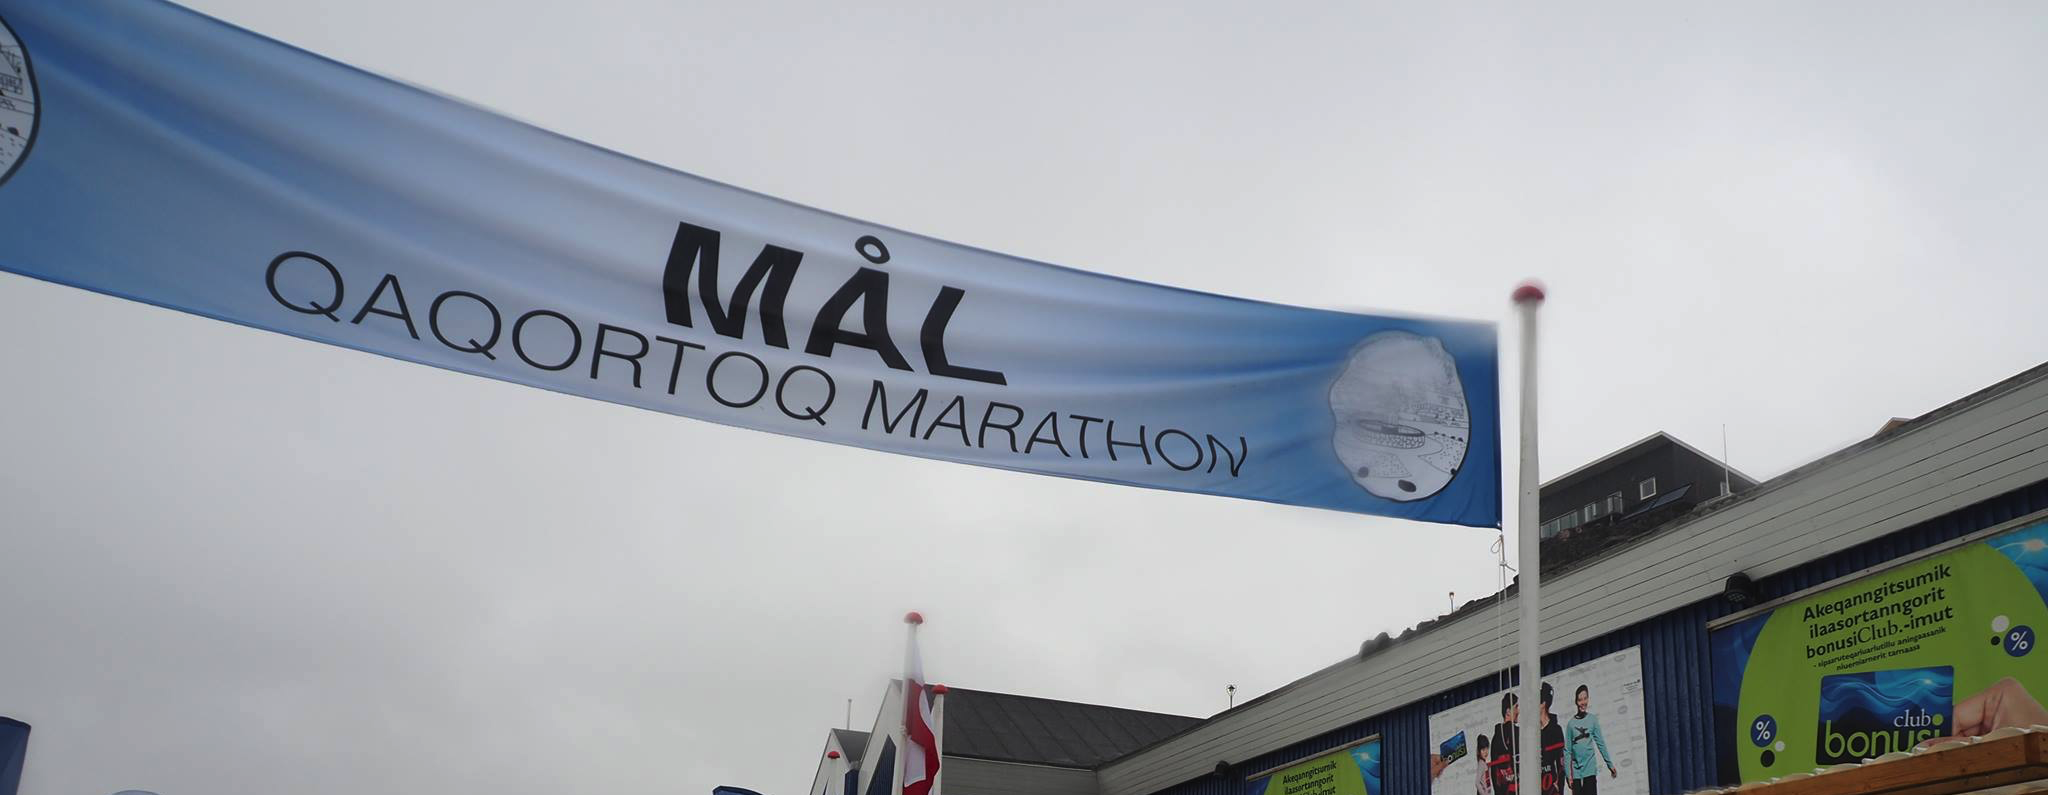 Qaqortoq Marathon 2019